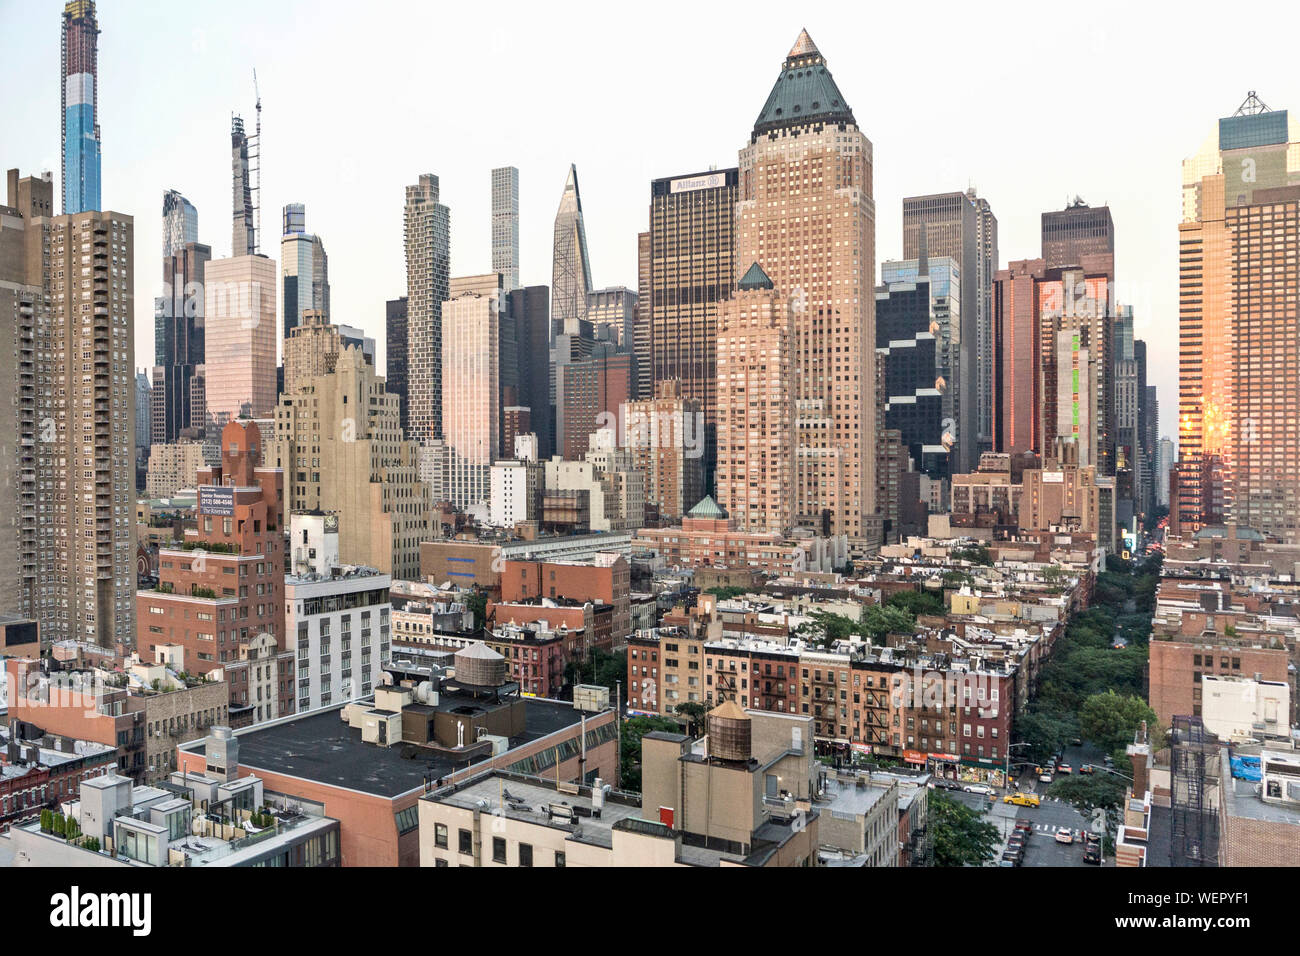 New York Midtown skyline con nuevas torres, esforzándose cada vez más flaco sliver azul a la izquierda va a ser más alto de US contraste con techos bajos Hells Kitchen Foto de stock